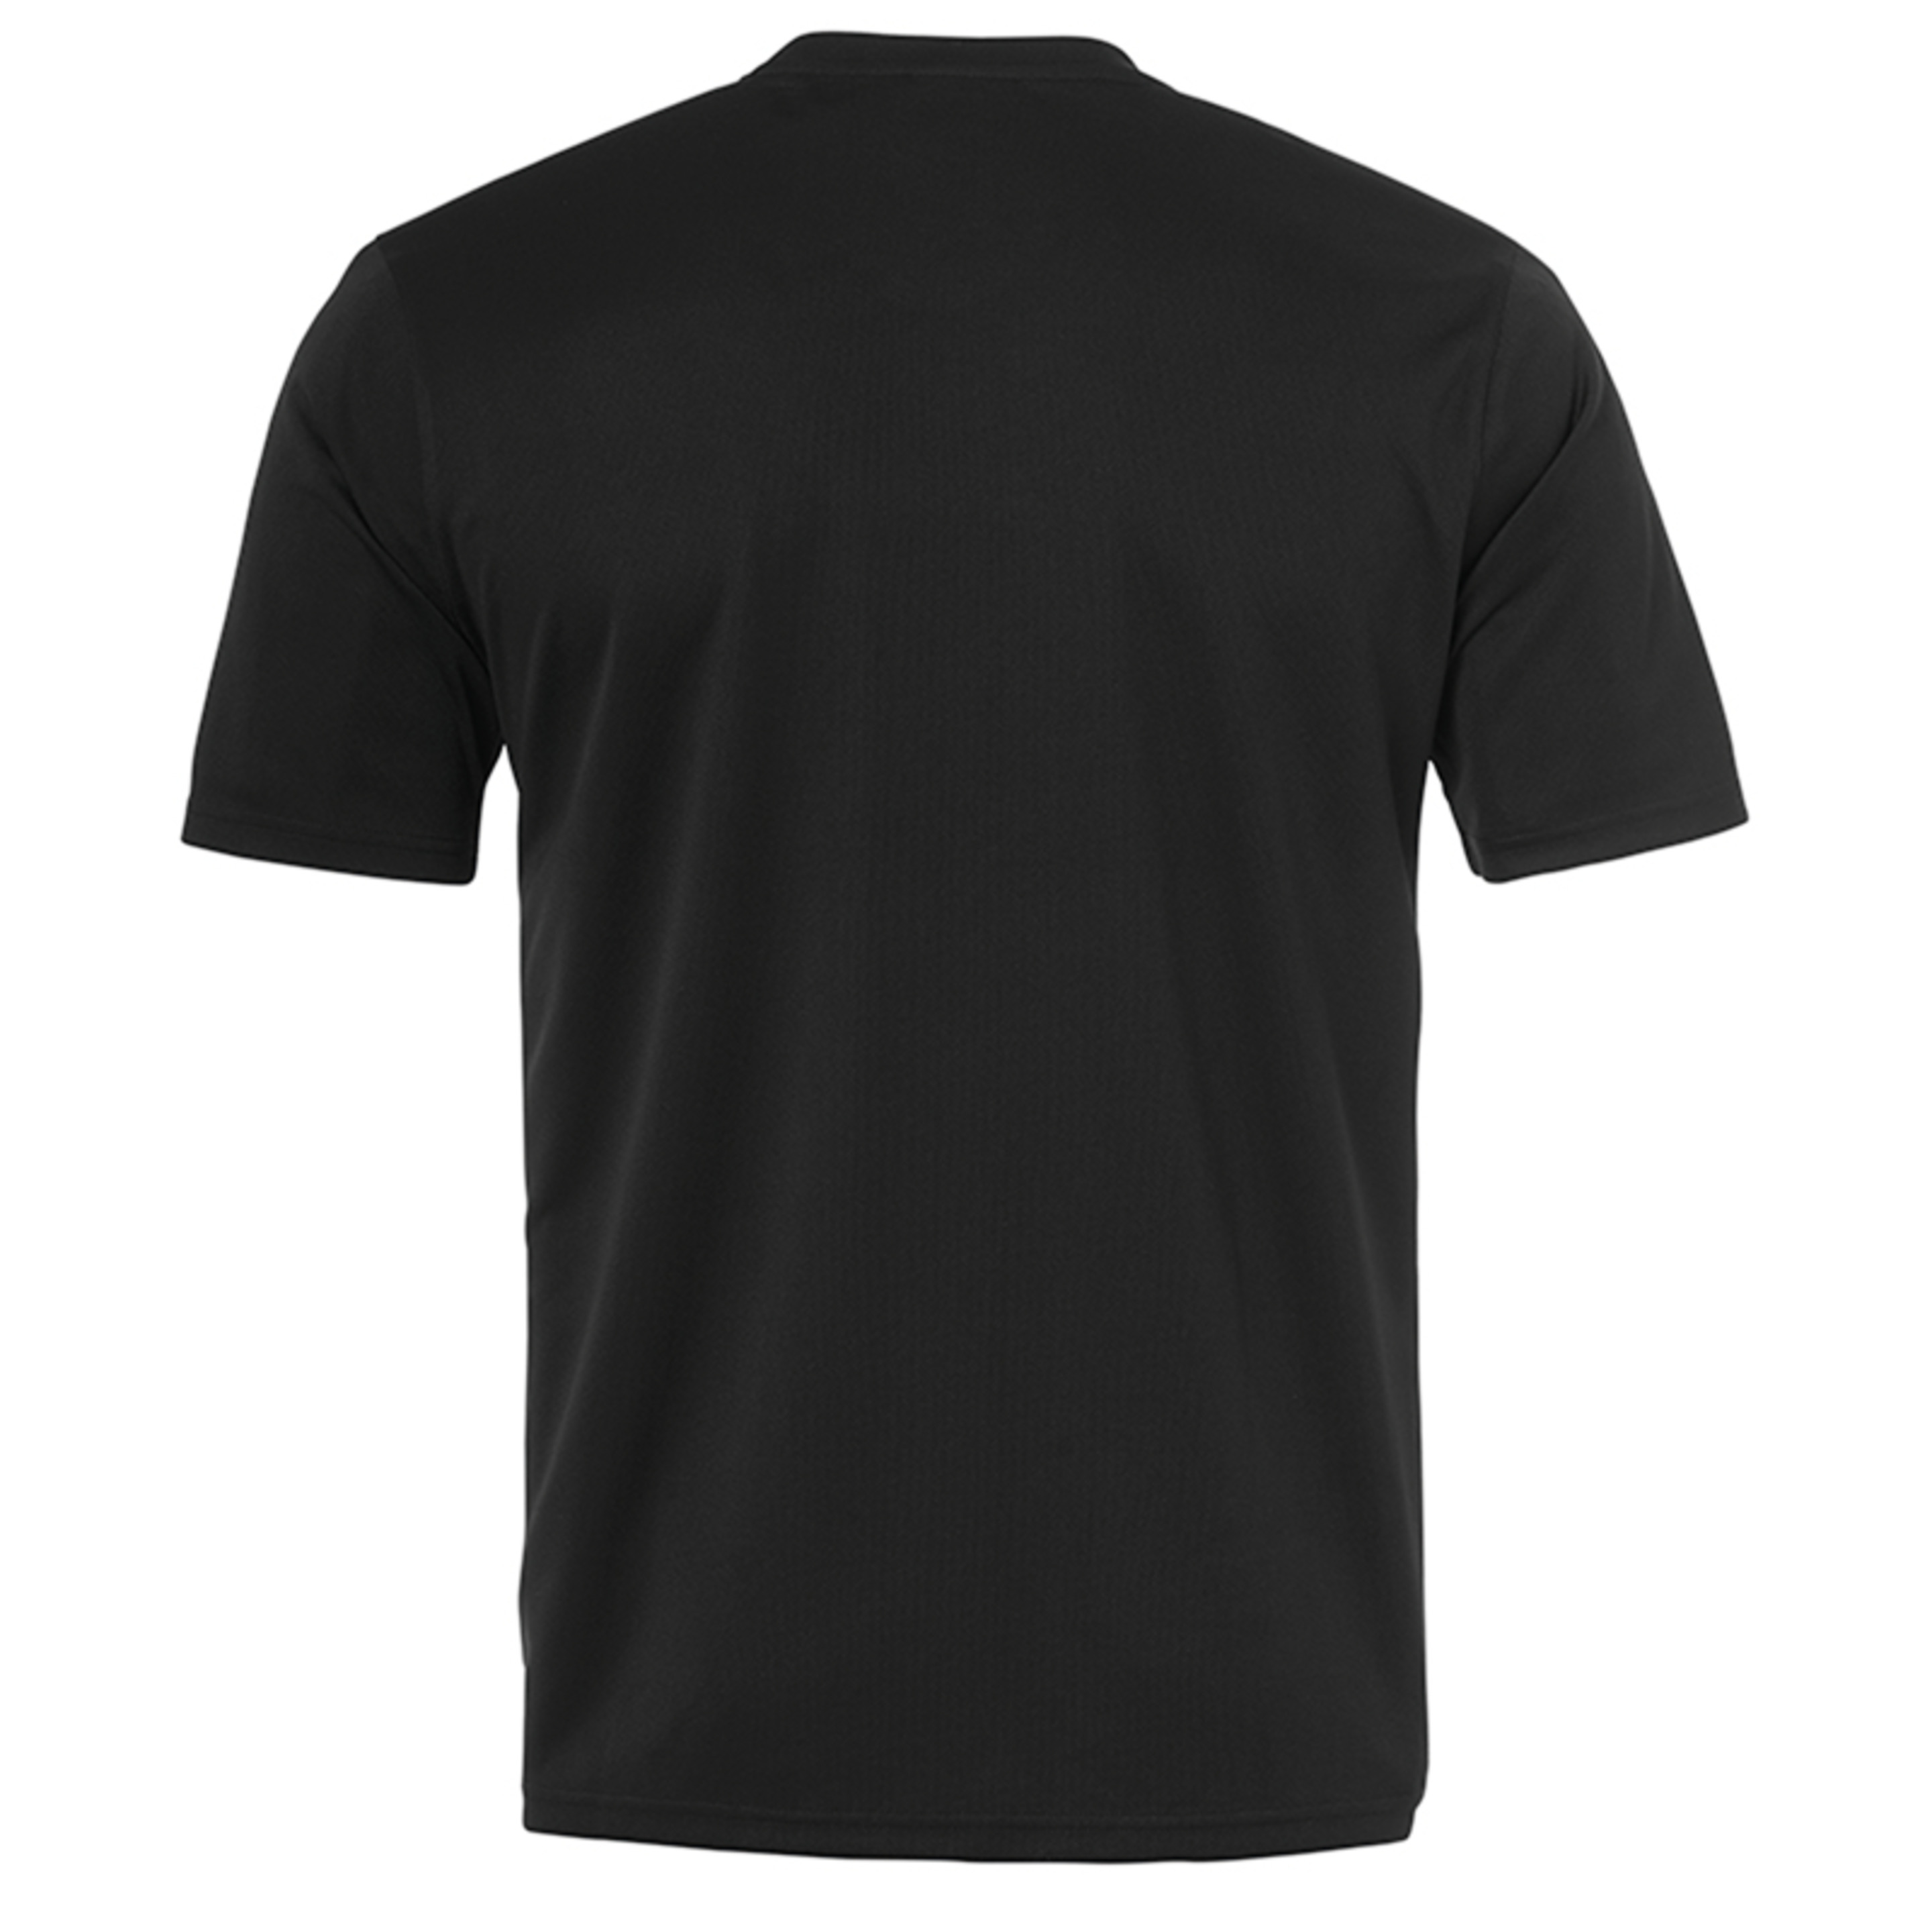 Goal Polyester Training T-shirt Negro/blanco Uhlsport